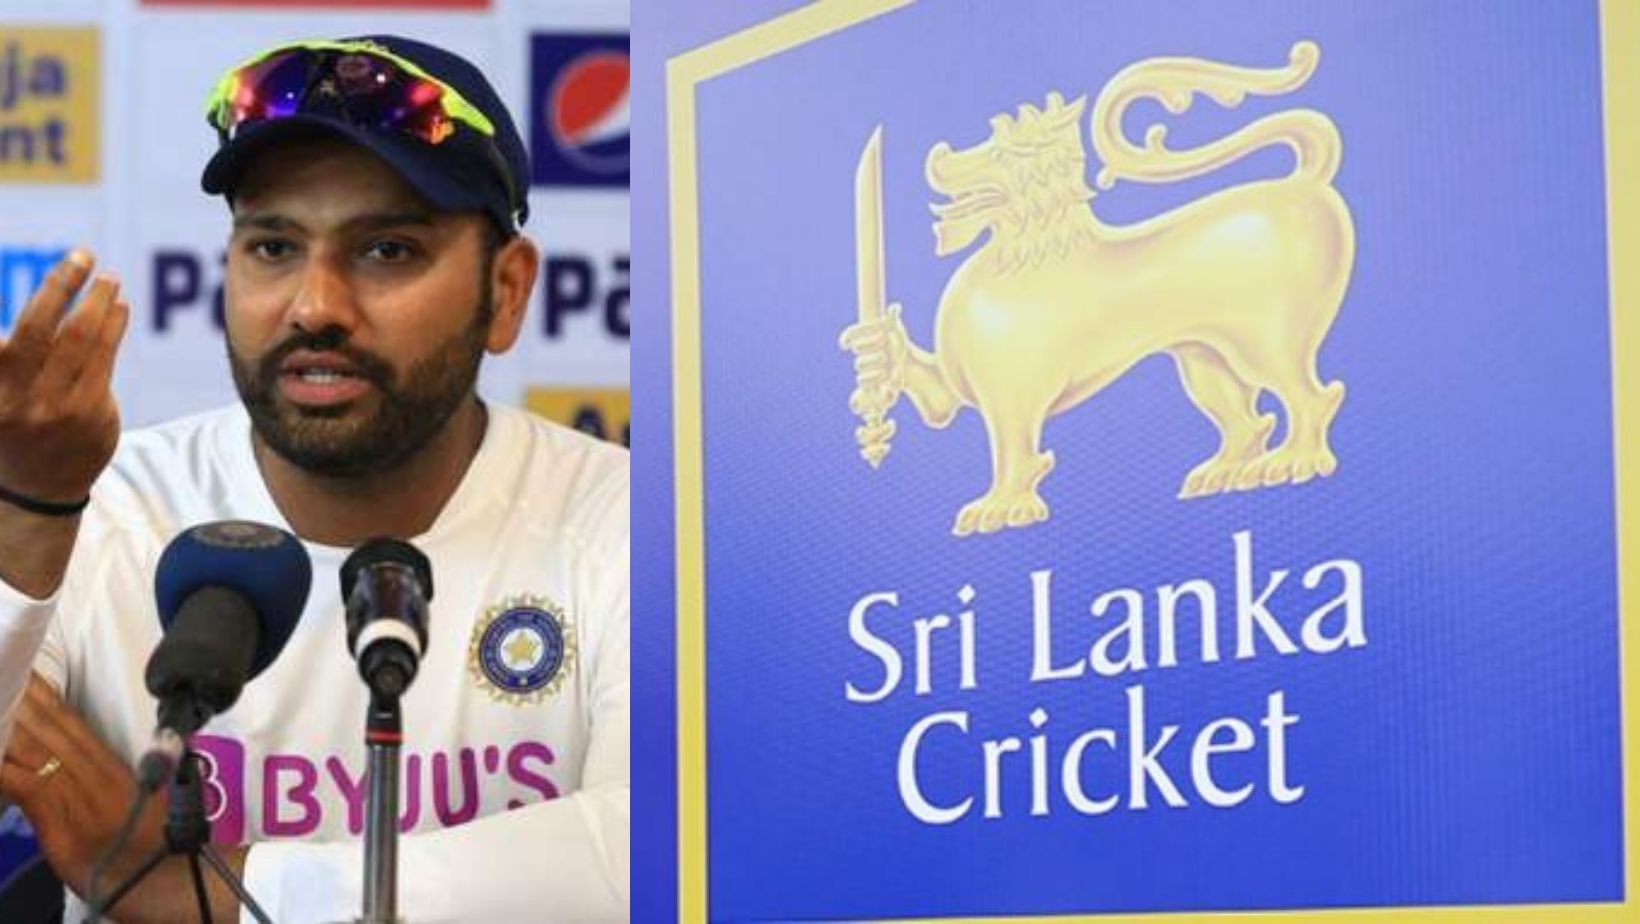 रोहित शर्मा को श्रीलंका के खिलाफ सीरीज से पहले टेस्ट कप्तान बनाया जा सकता है